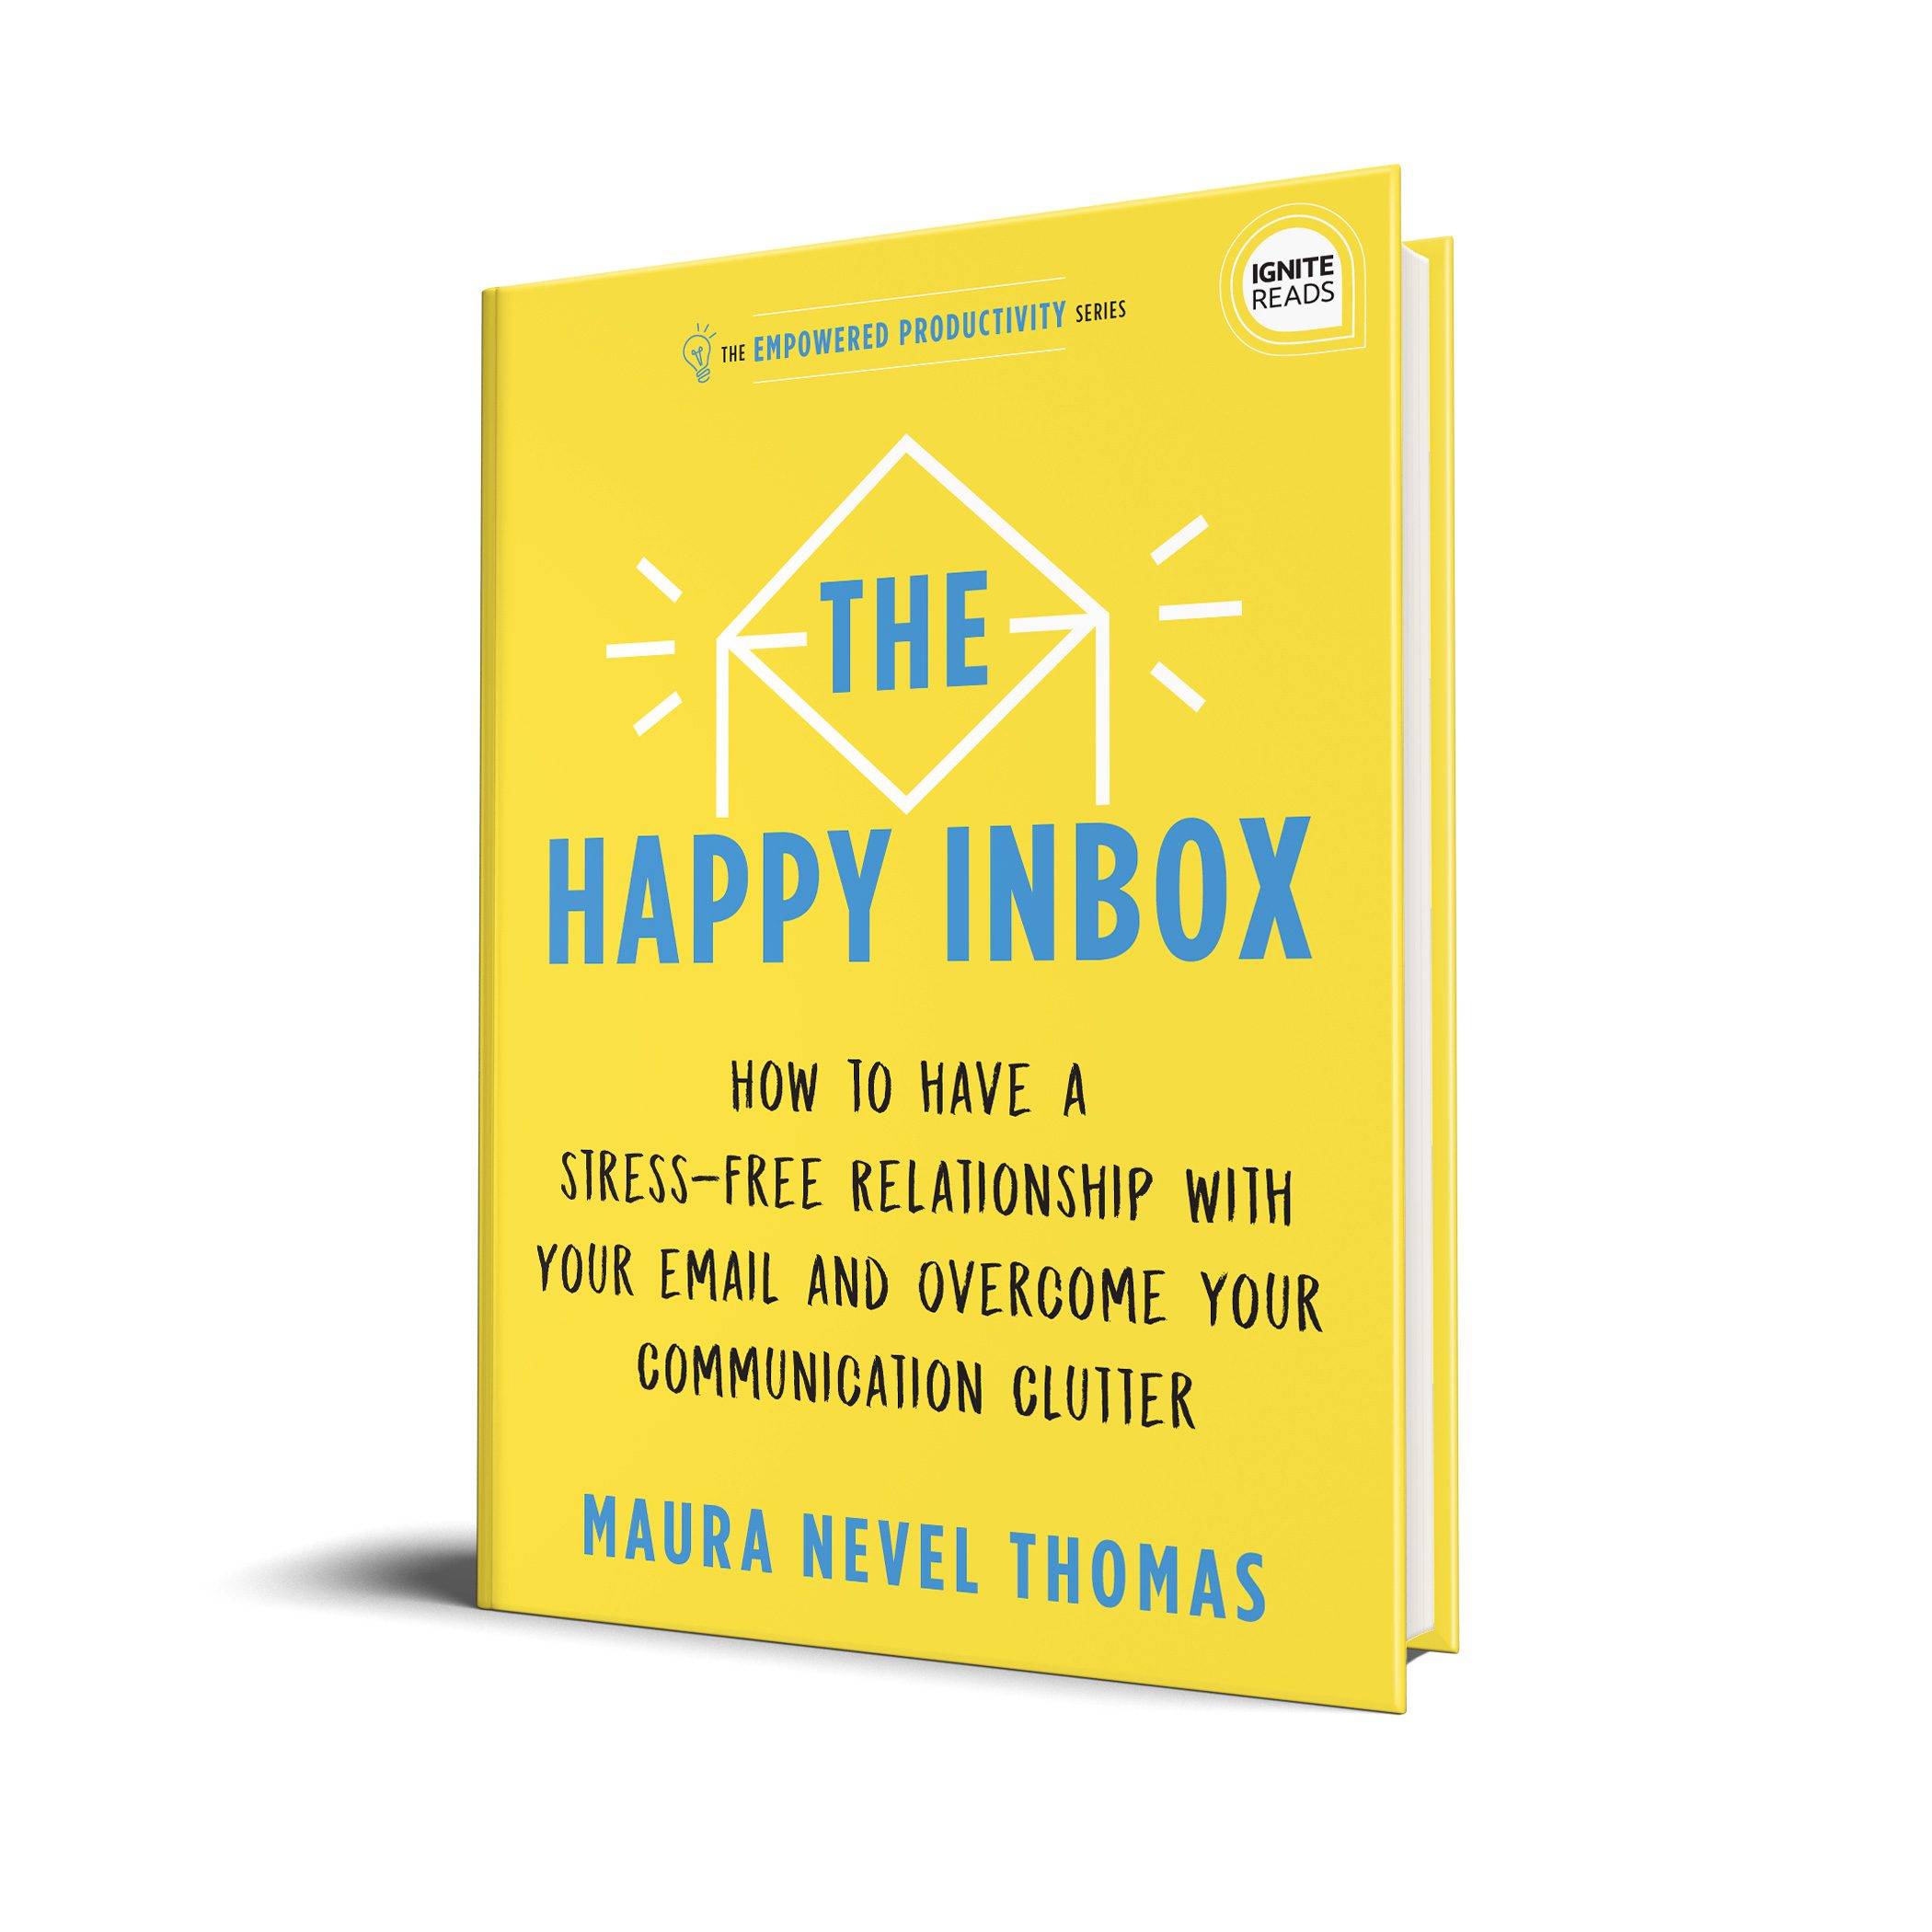 The Happy Inbox by Maura Thomas